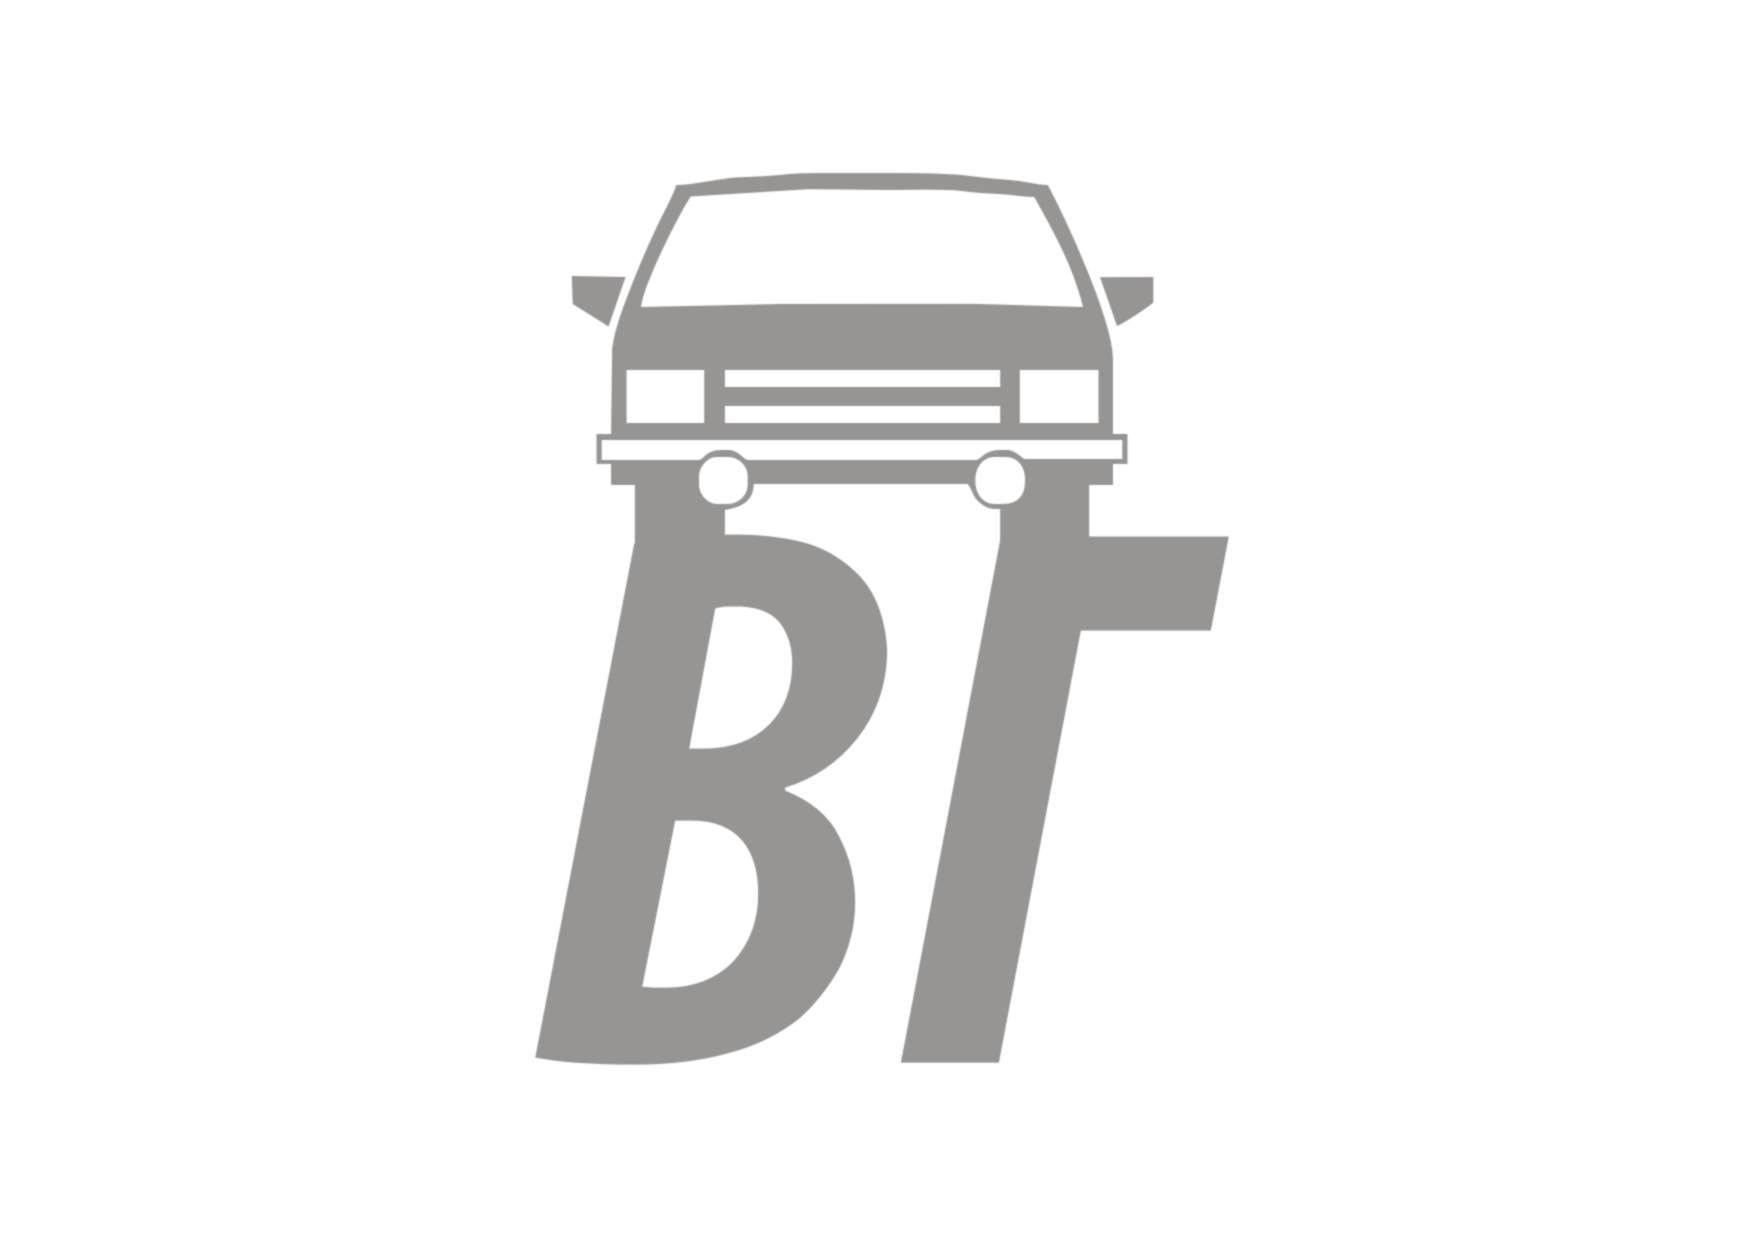 Разработка логотипа и стиля для авто компании - дизайнер xlop007